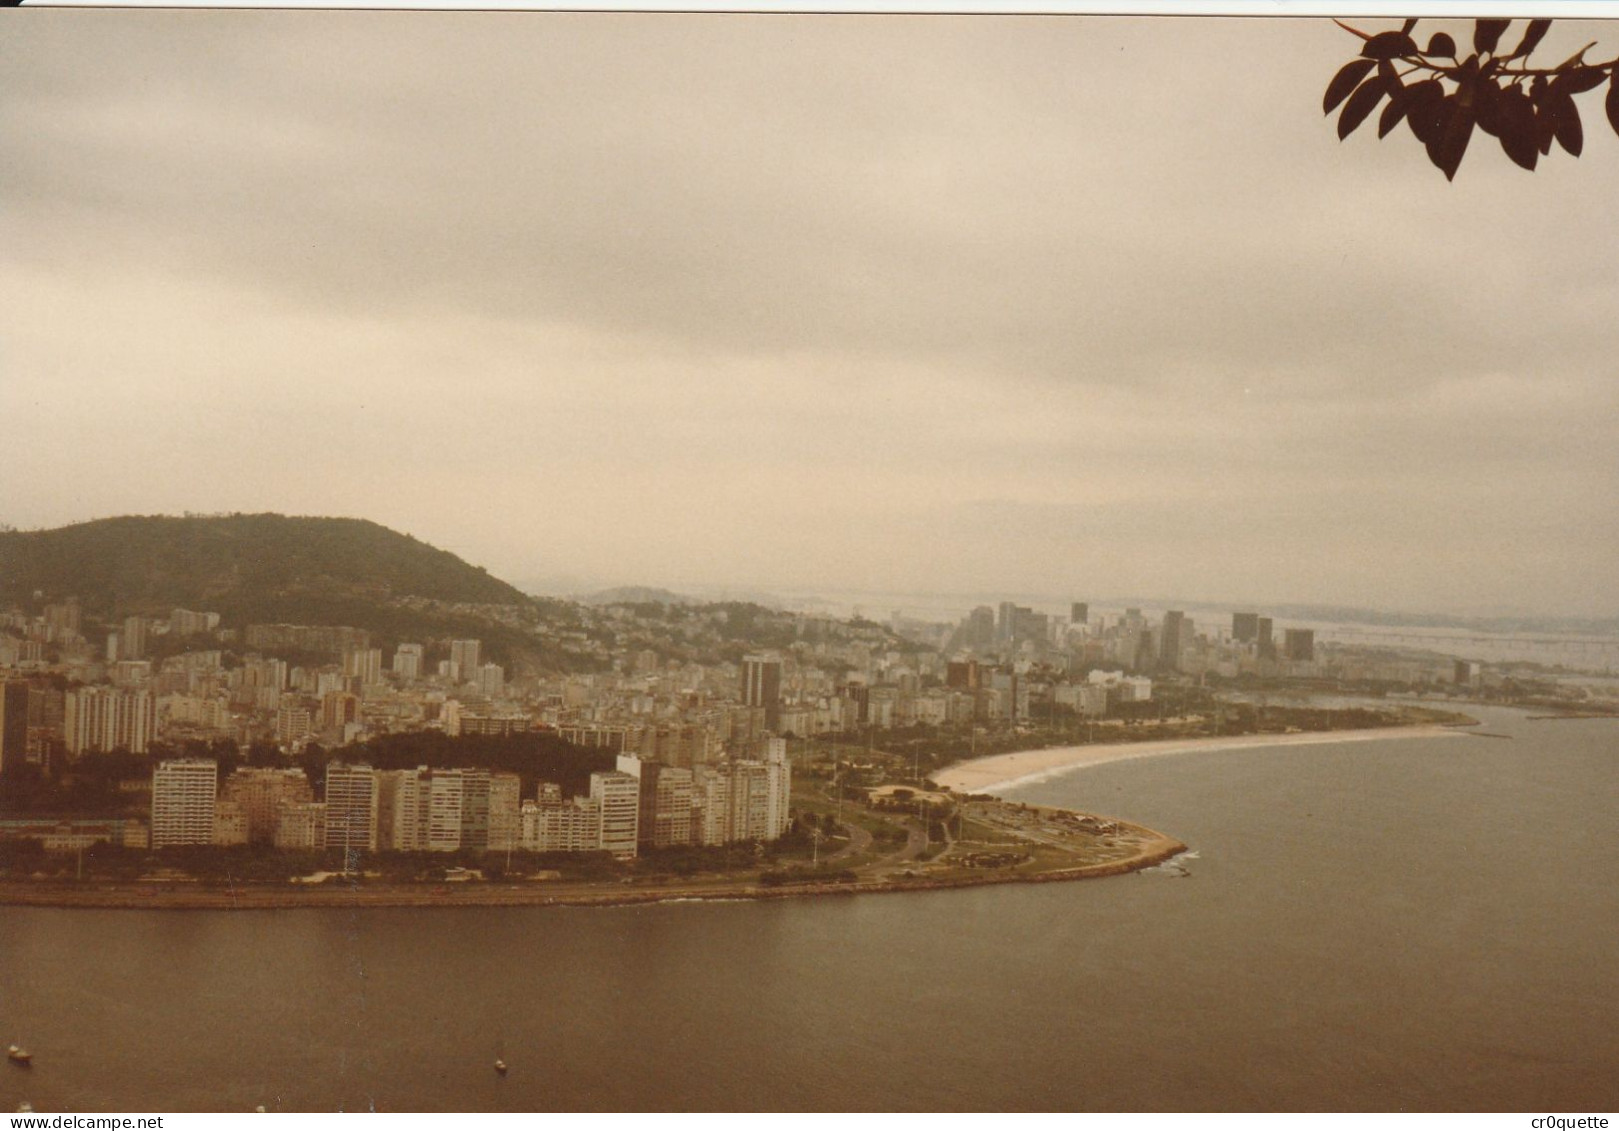 PHOTOGRAPHIES ORIGINALES / BRESIL - RIO DE JANEIRO en 1986 (lot de 22 photos)